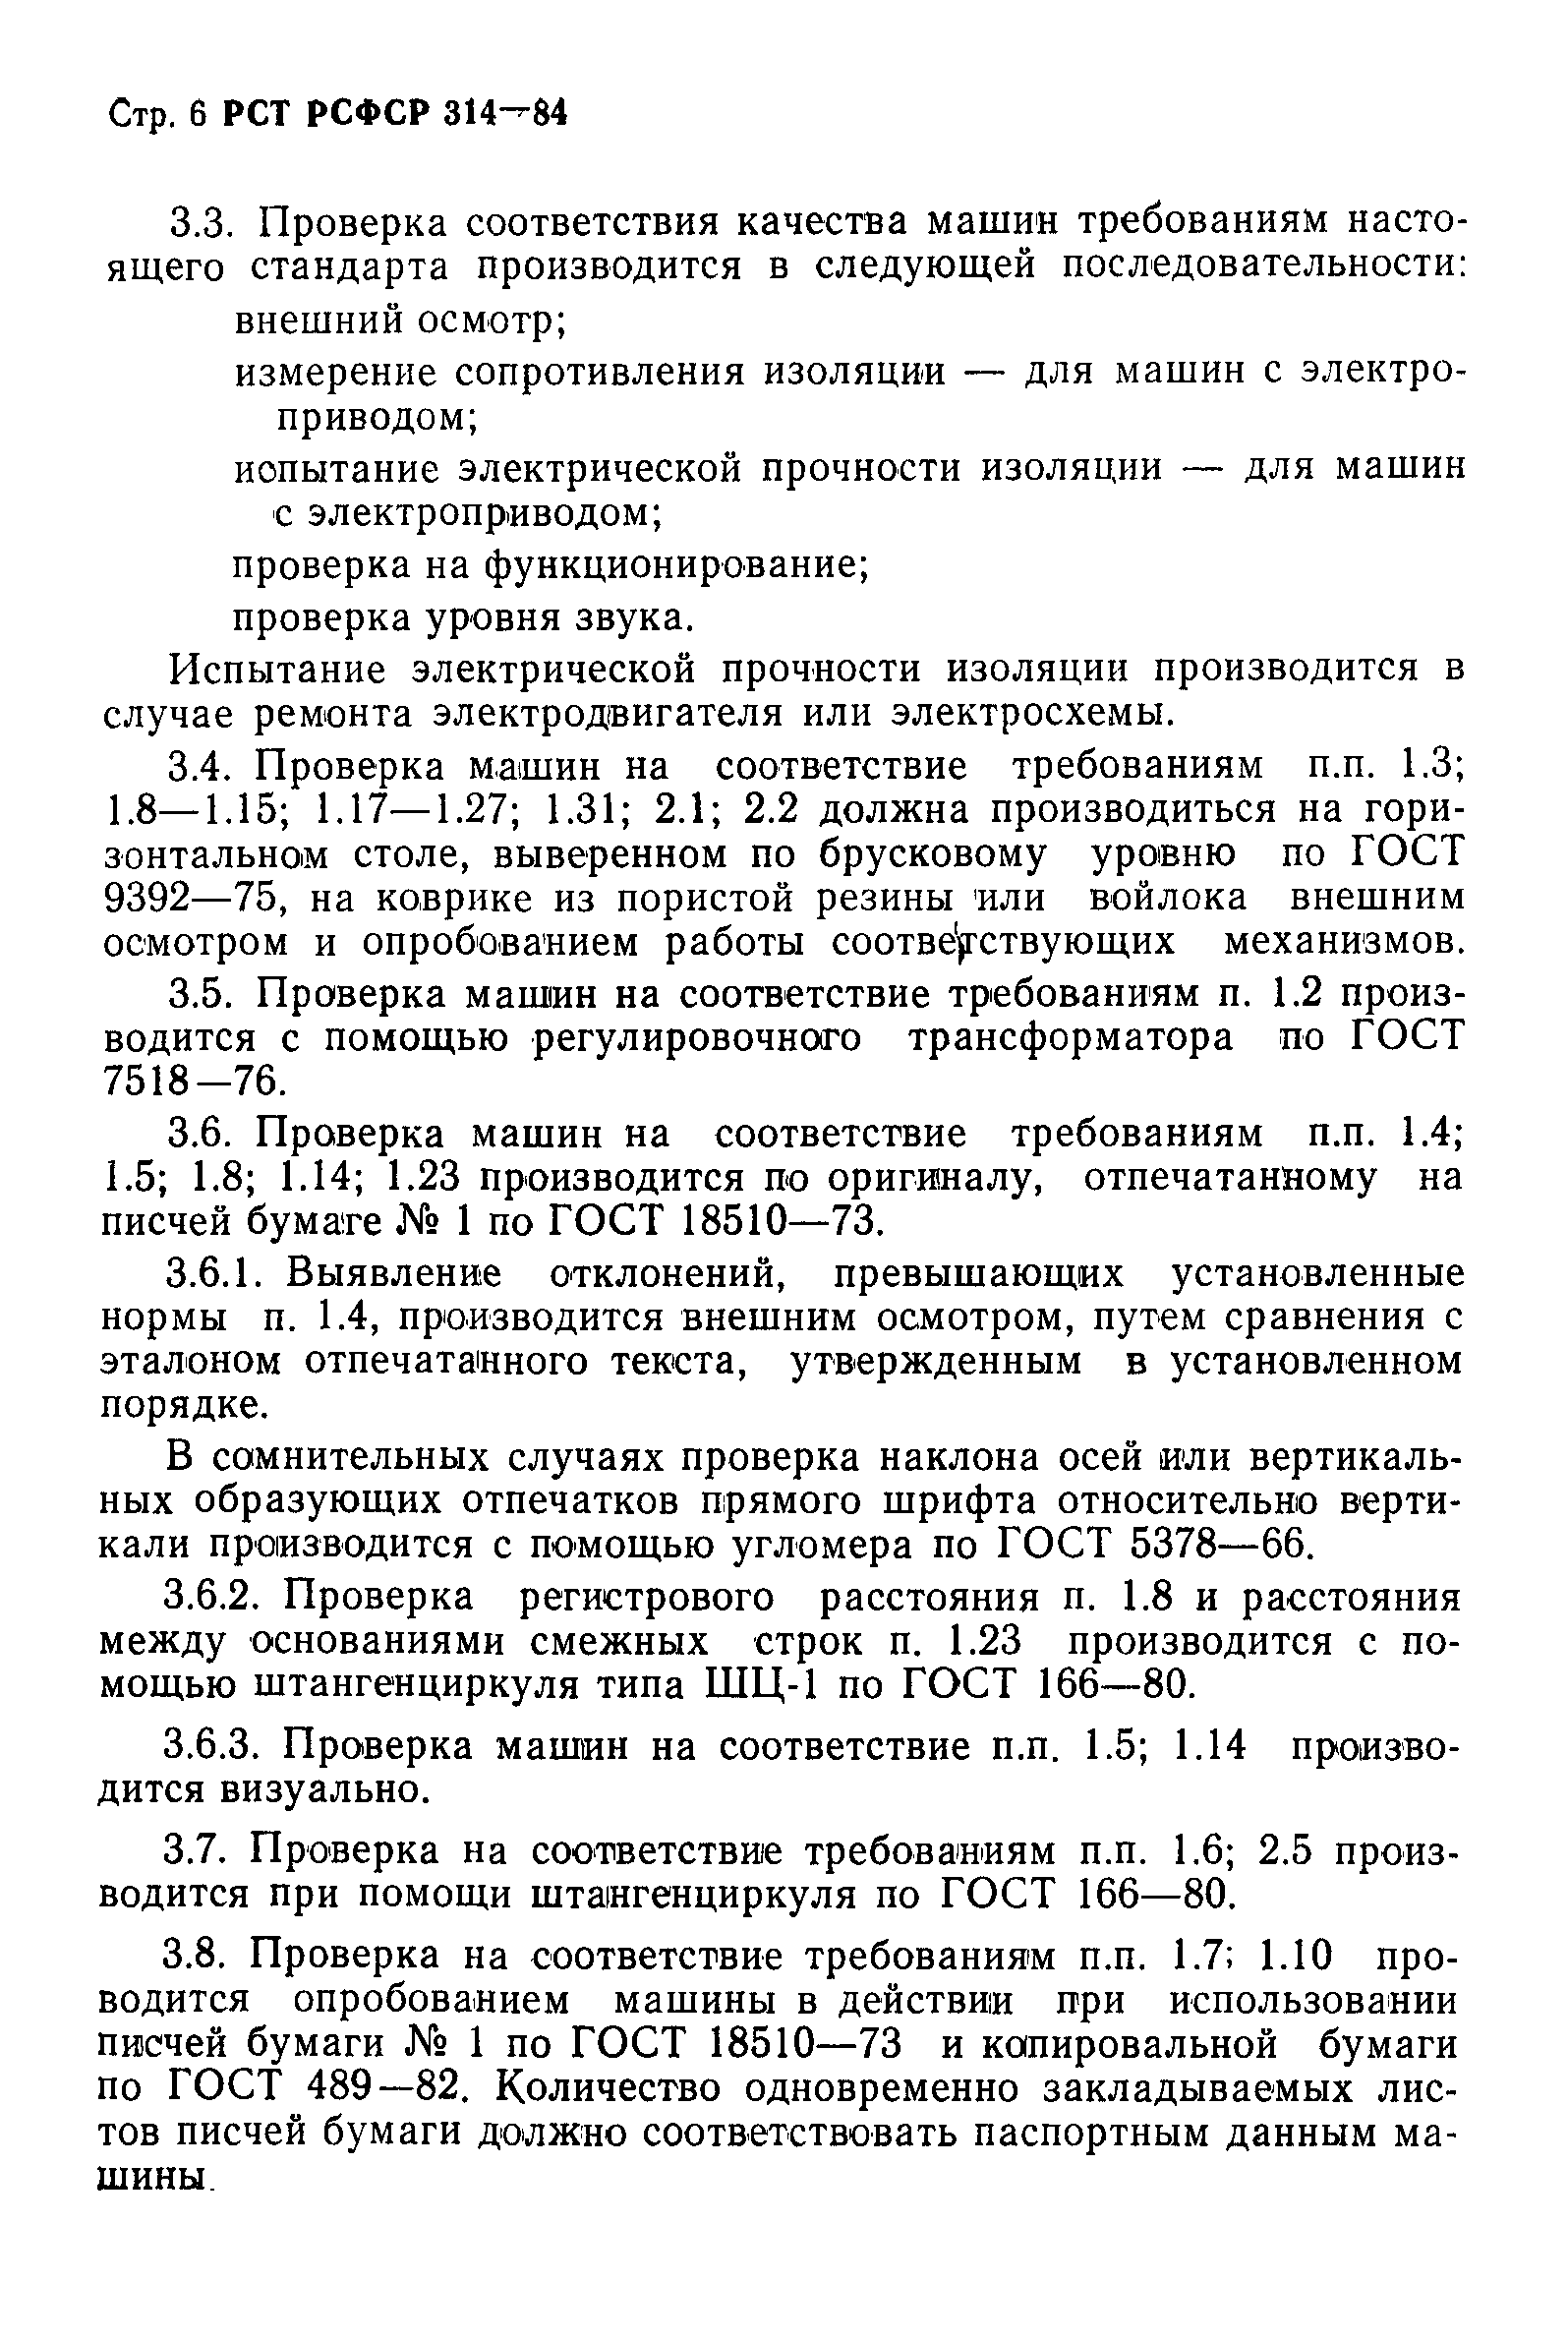 РСТ РСФСР 314-84